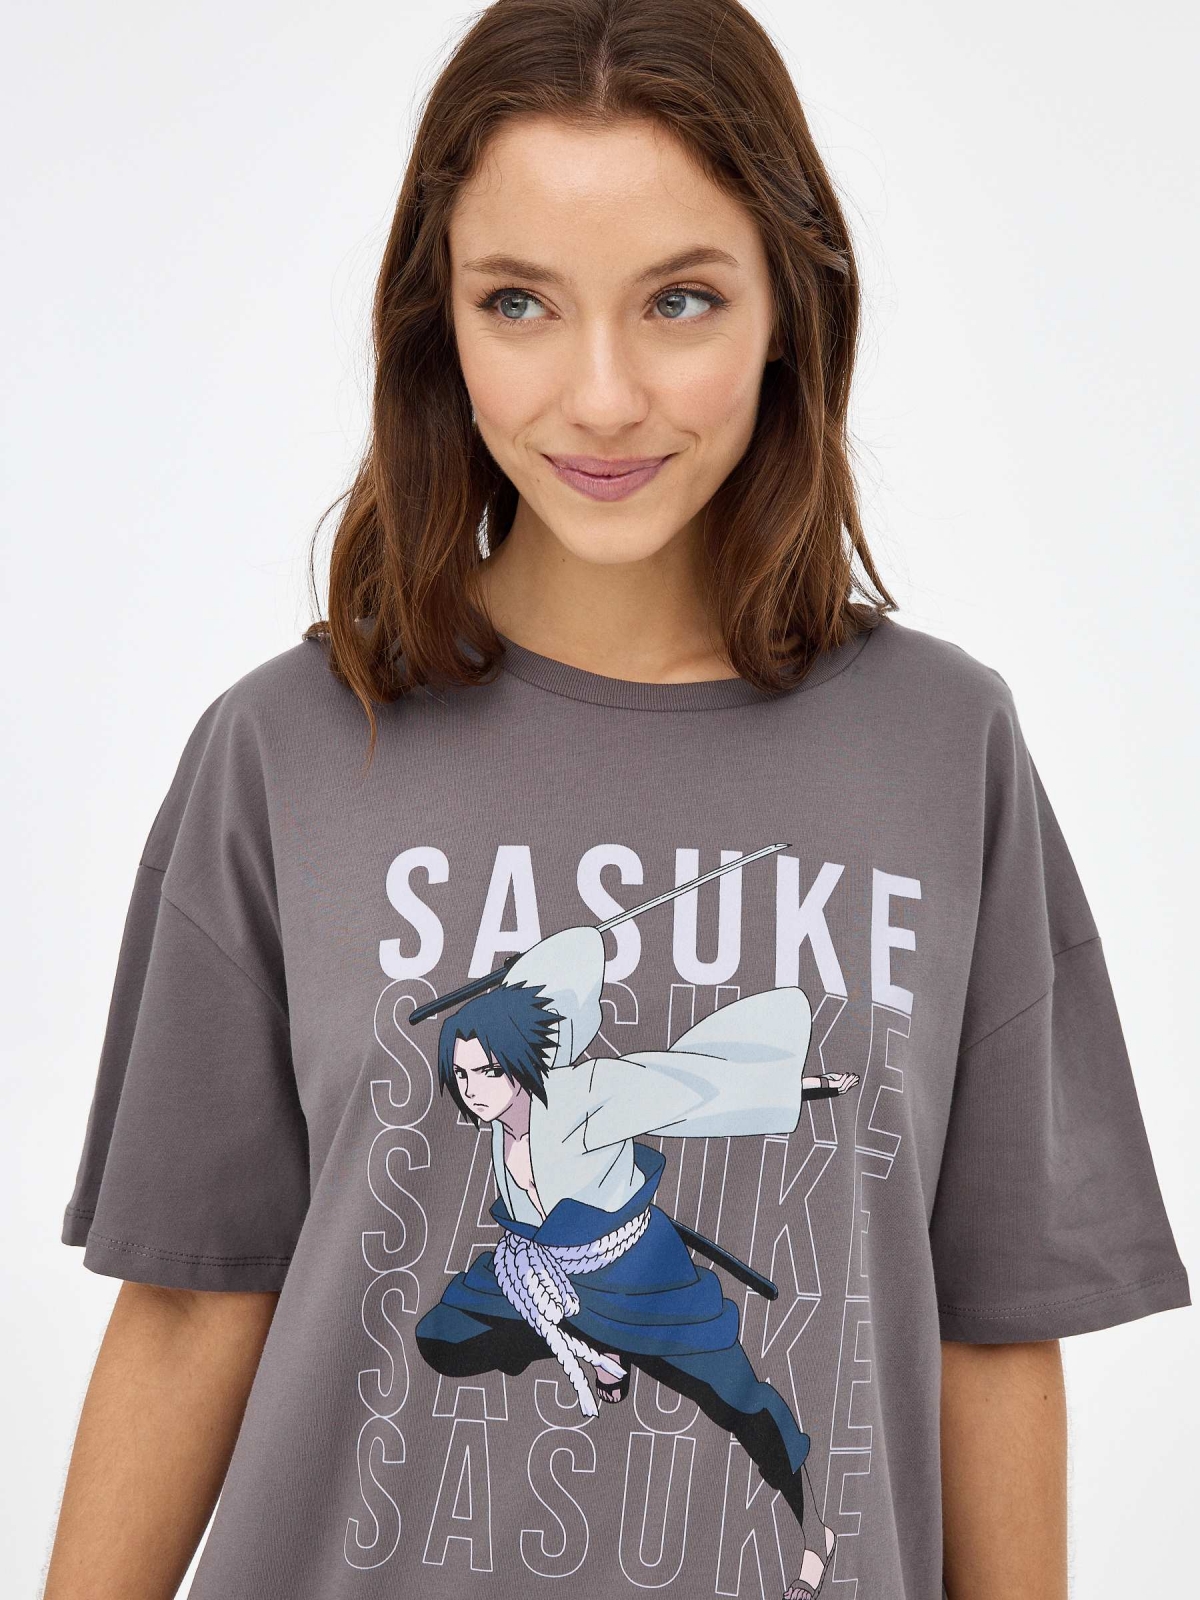  Sasuke t-shirt dark grey foreground